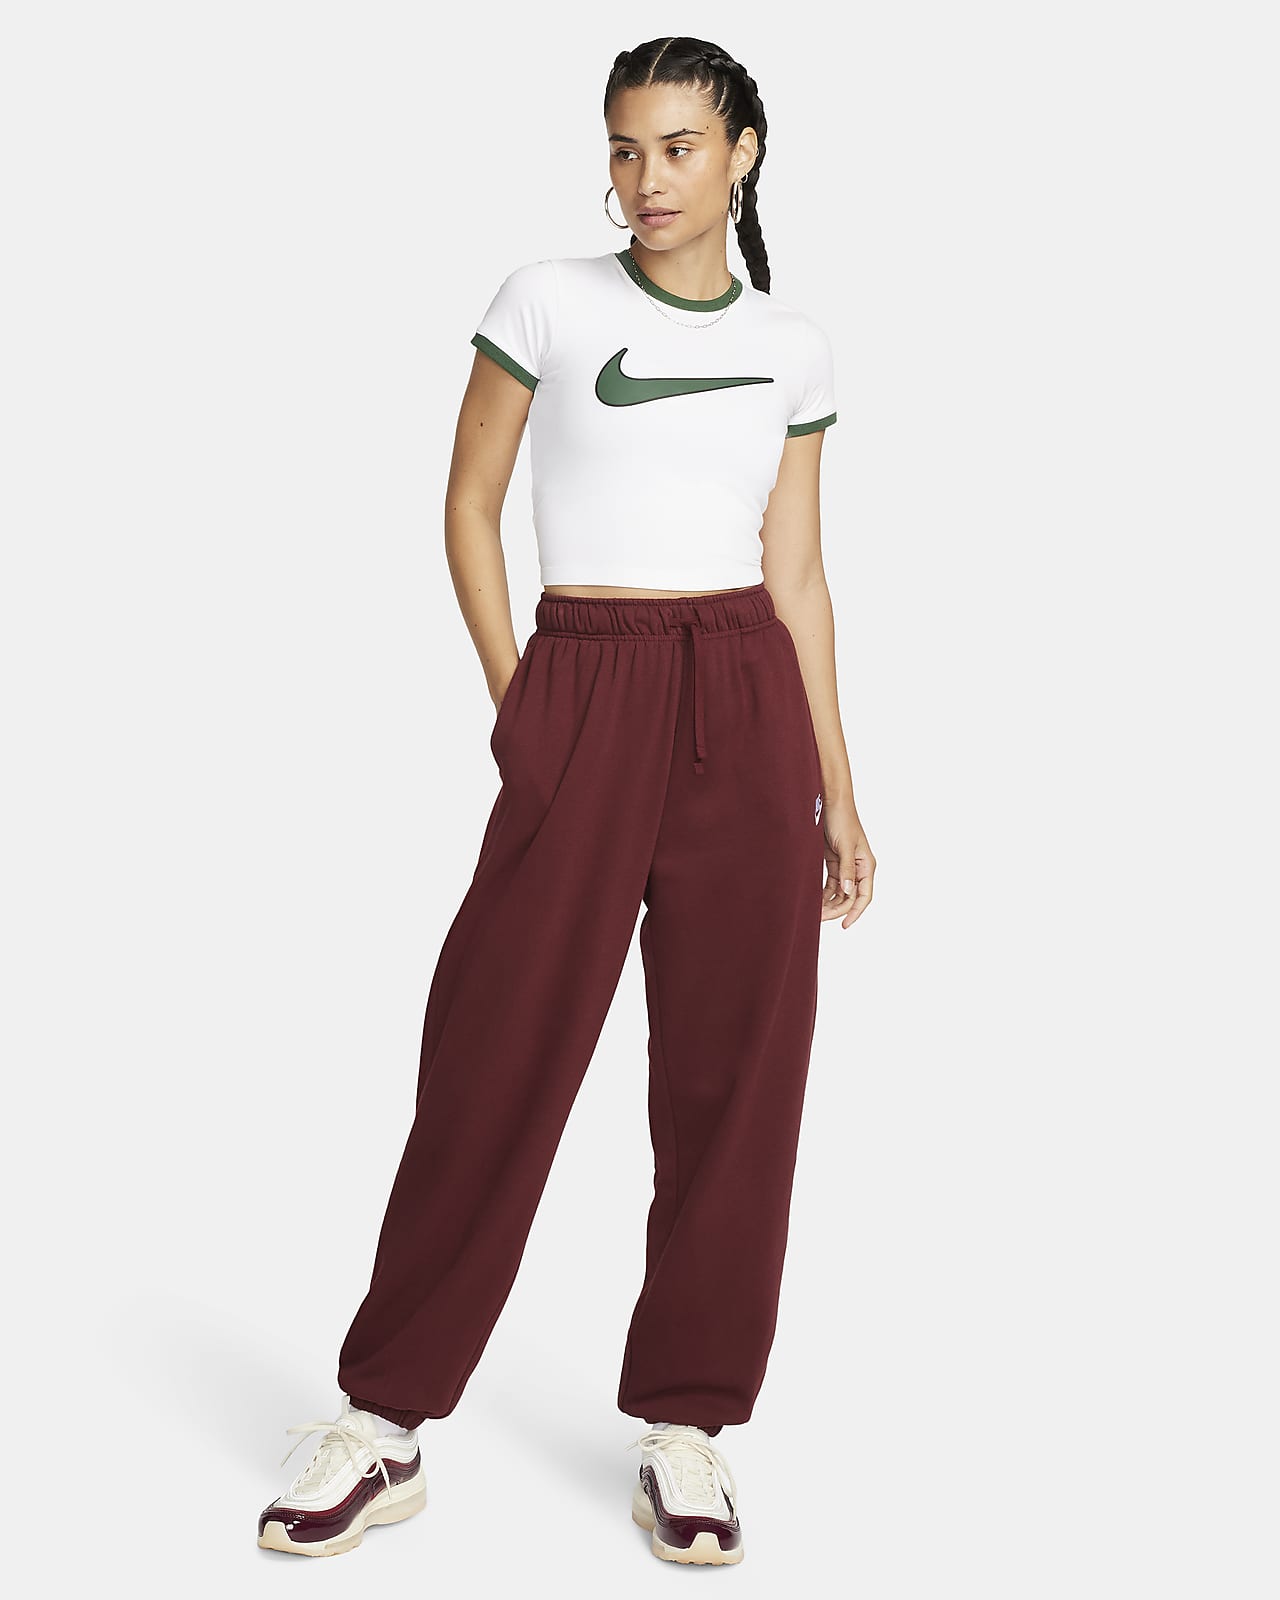 Nike Womens Sportswear Sweatpants CZ9859 Lightweight Standard Fit